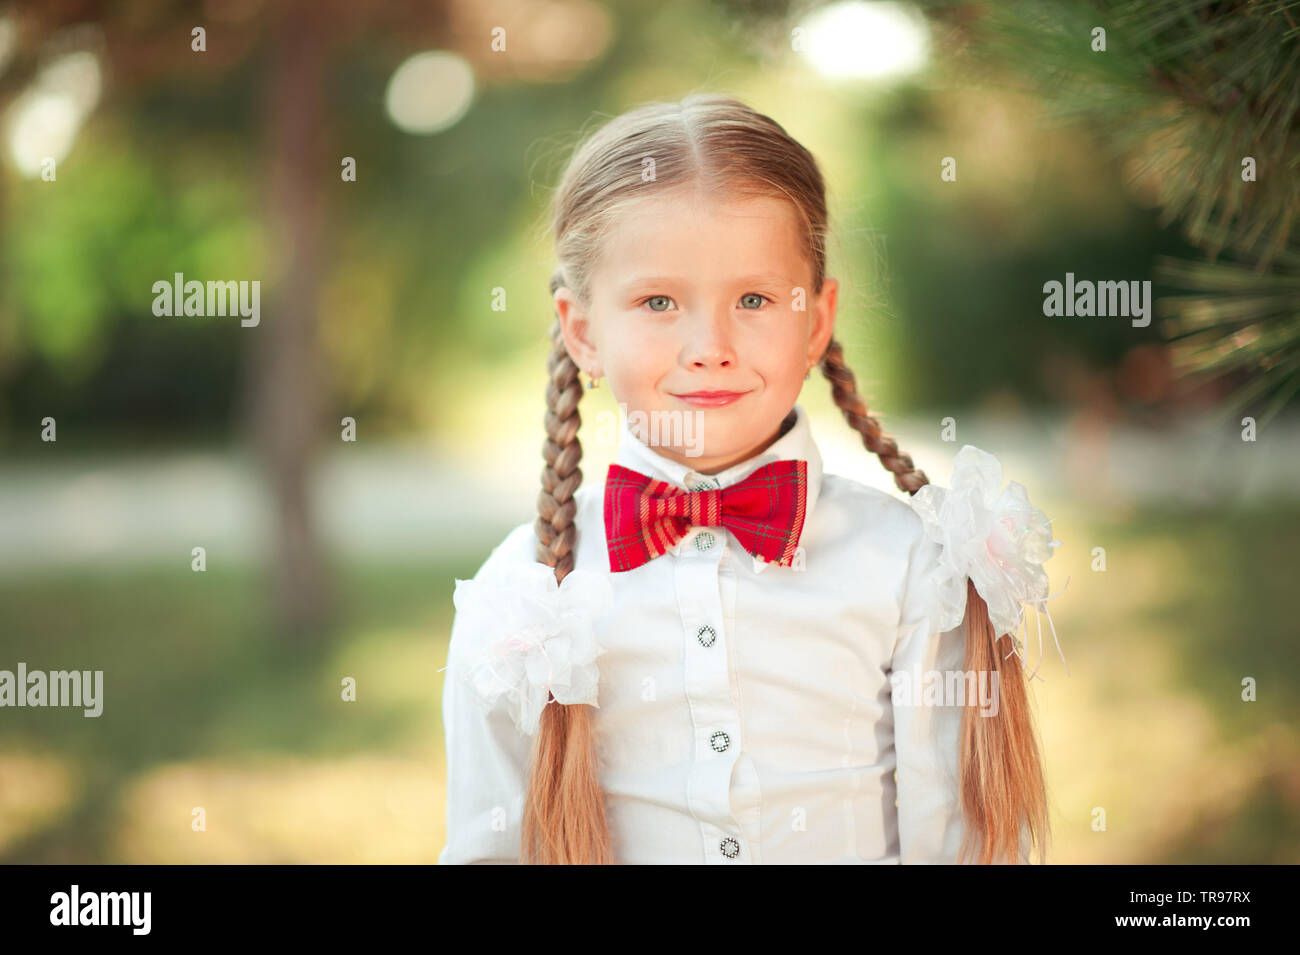 Fille enfant 6-7 ans smiling outdoors. Portant chemise blanche et cravate  rouge. En regardant la caméra Photo Stock - Alamy